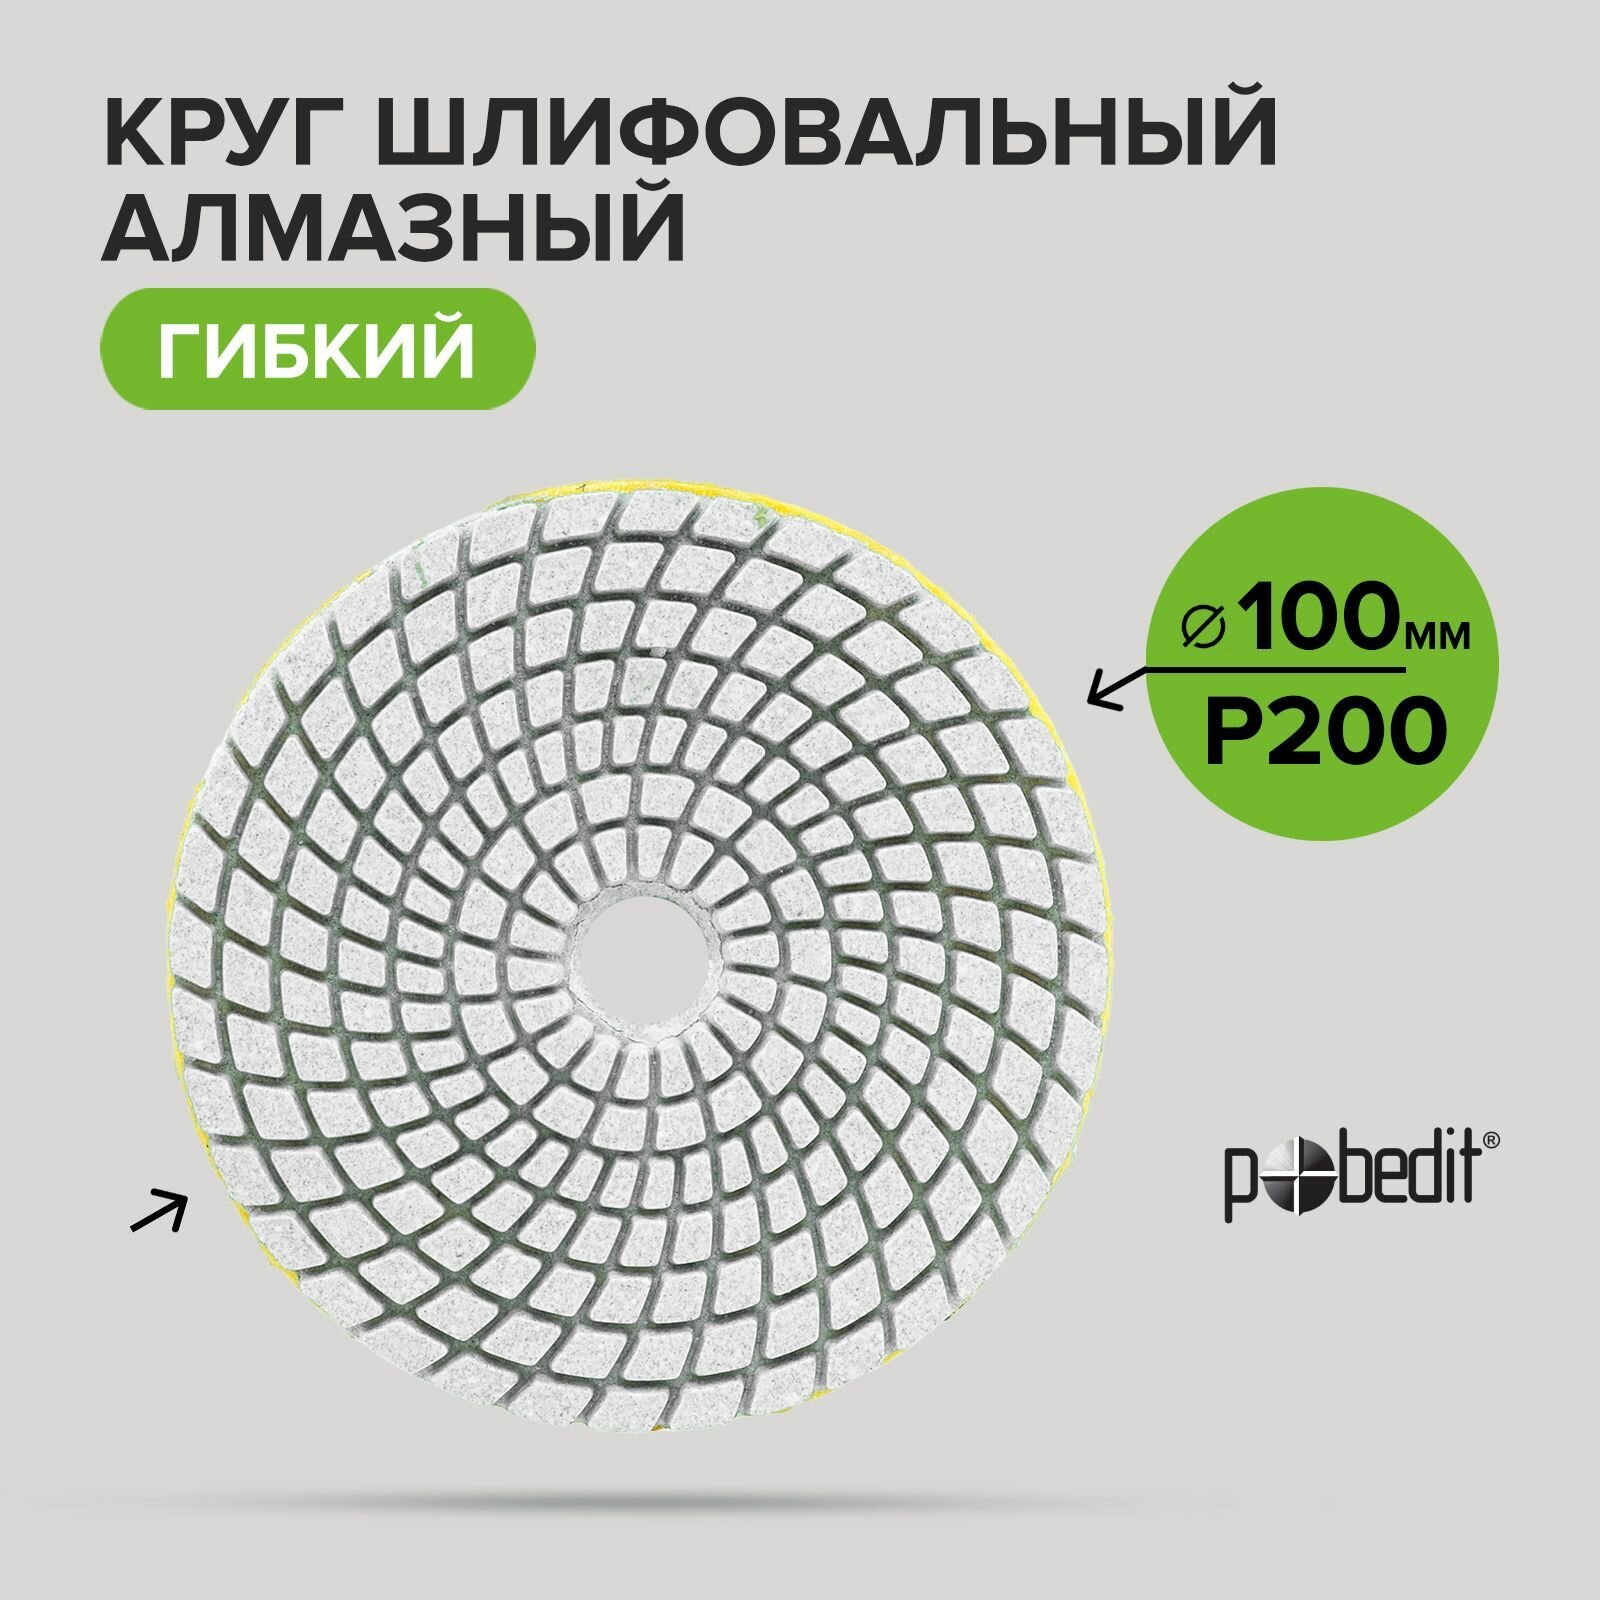 Алмазный гибкий шлифовальный круг Pobedit 100 мм Р200